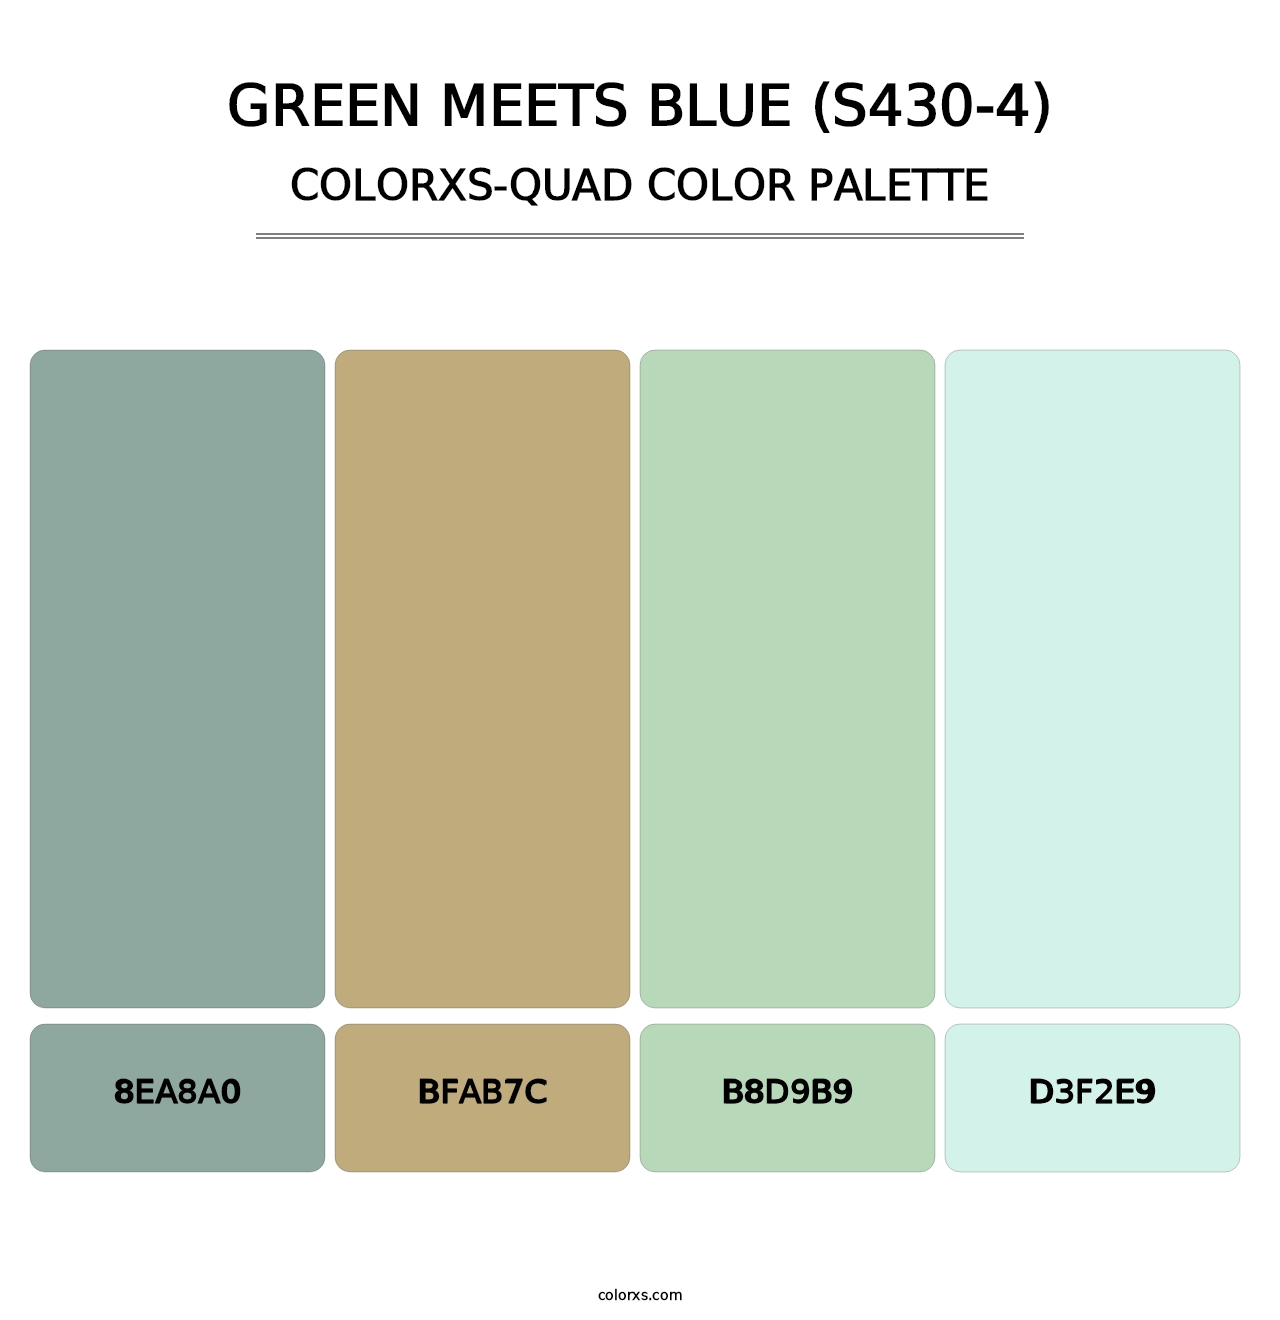 Green Meets Blue (S430-4) - Colorxs Quad Palette